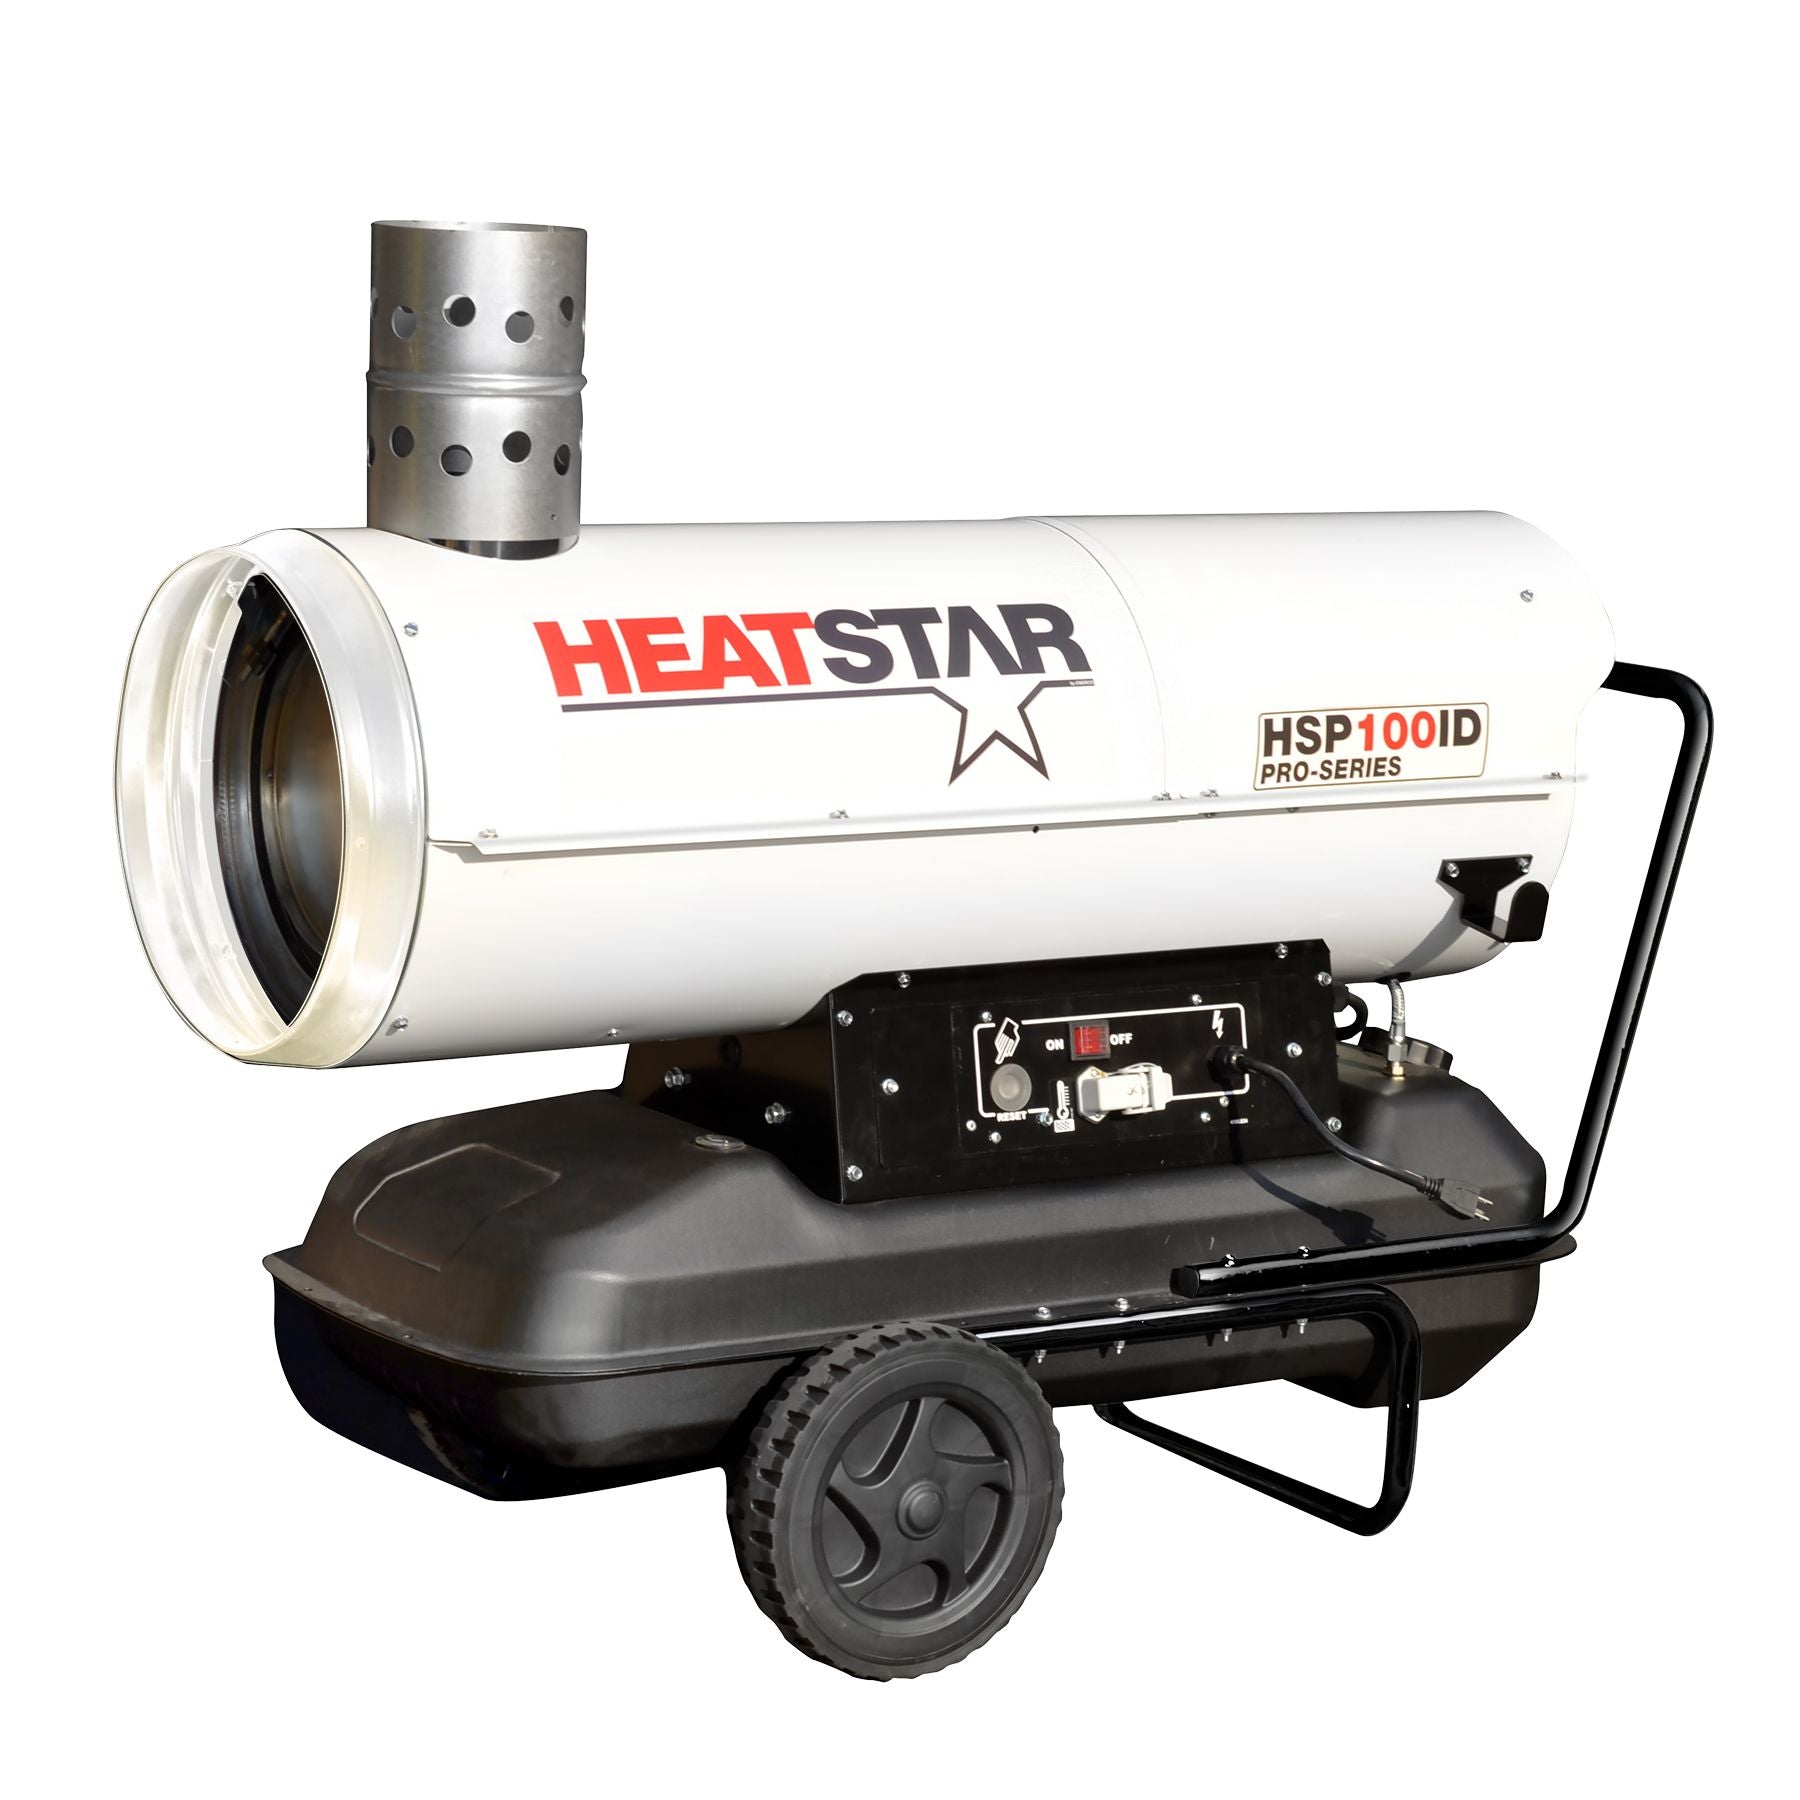 Heatstar HSP100ID Pro-Series Diesel/Oil Indirect Fired Heater - 110,000 BTU/HR